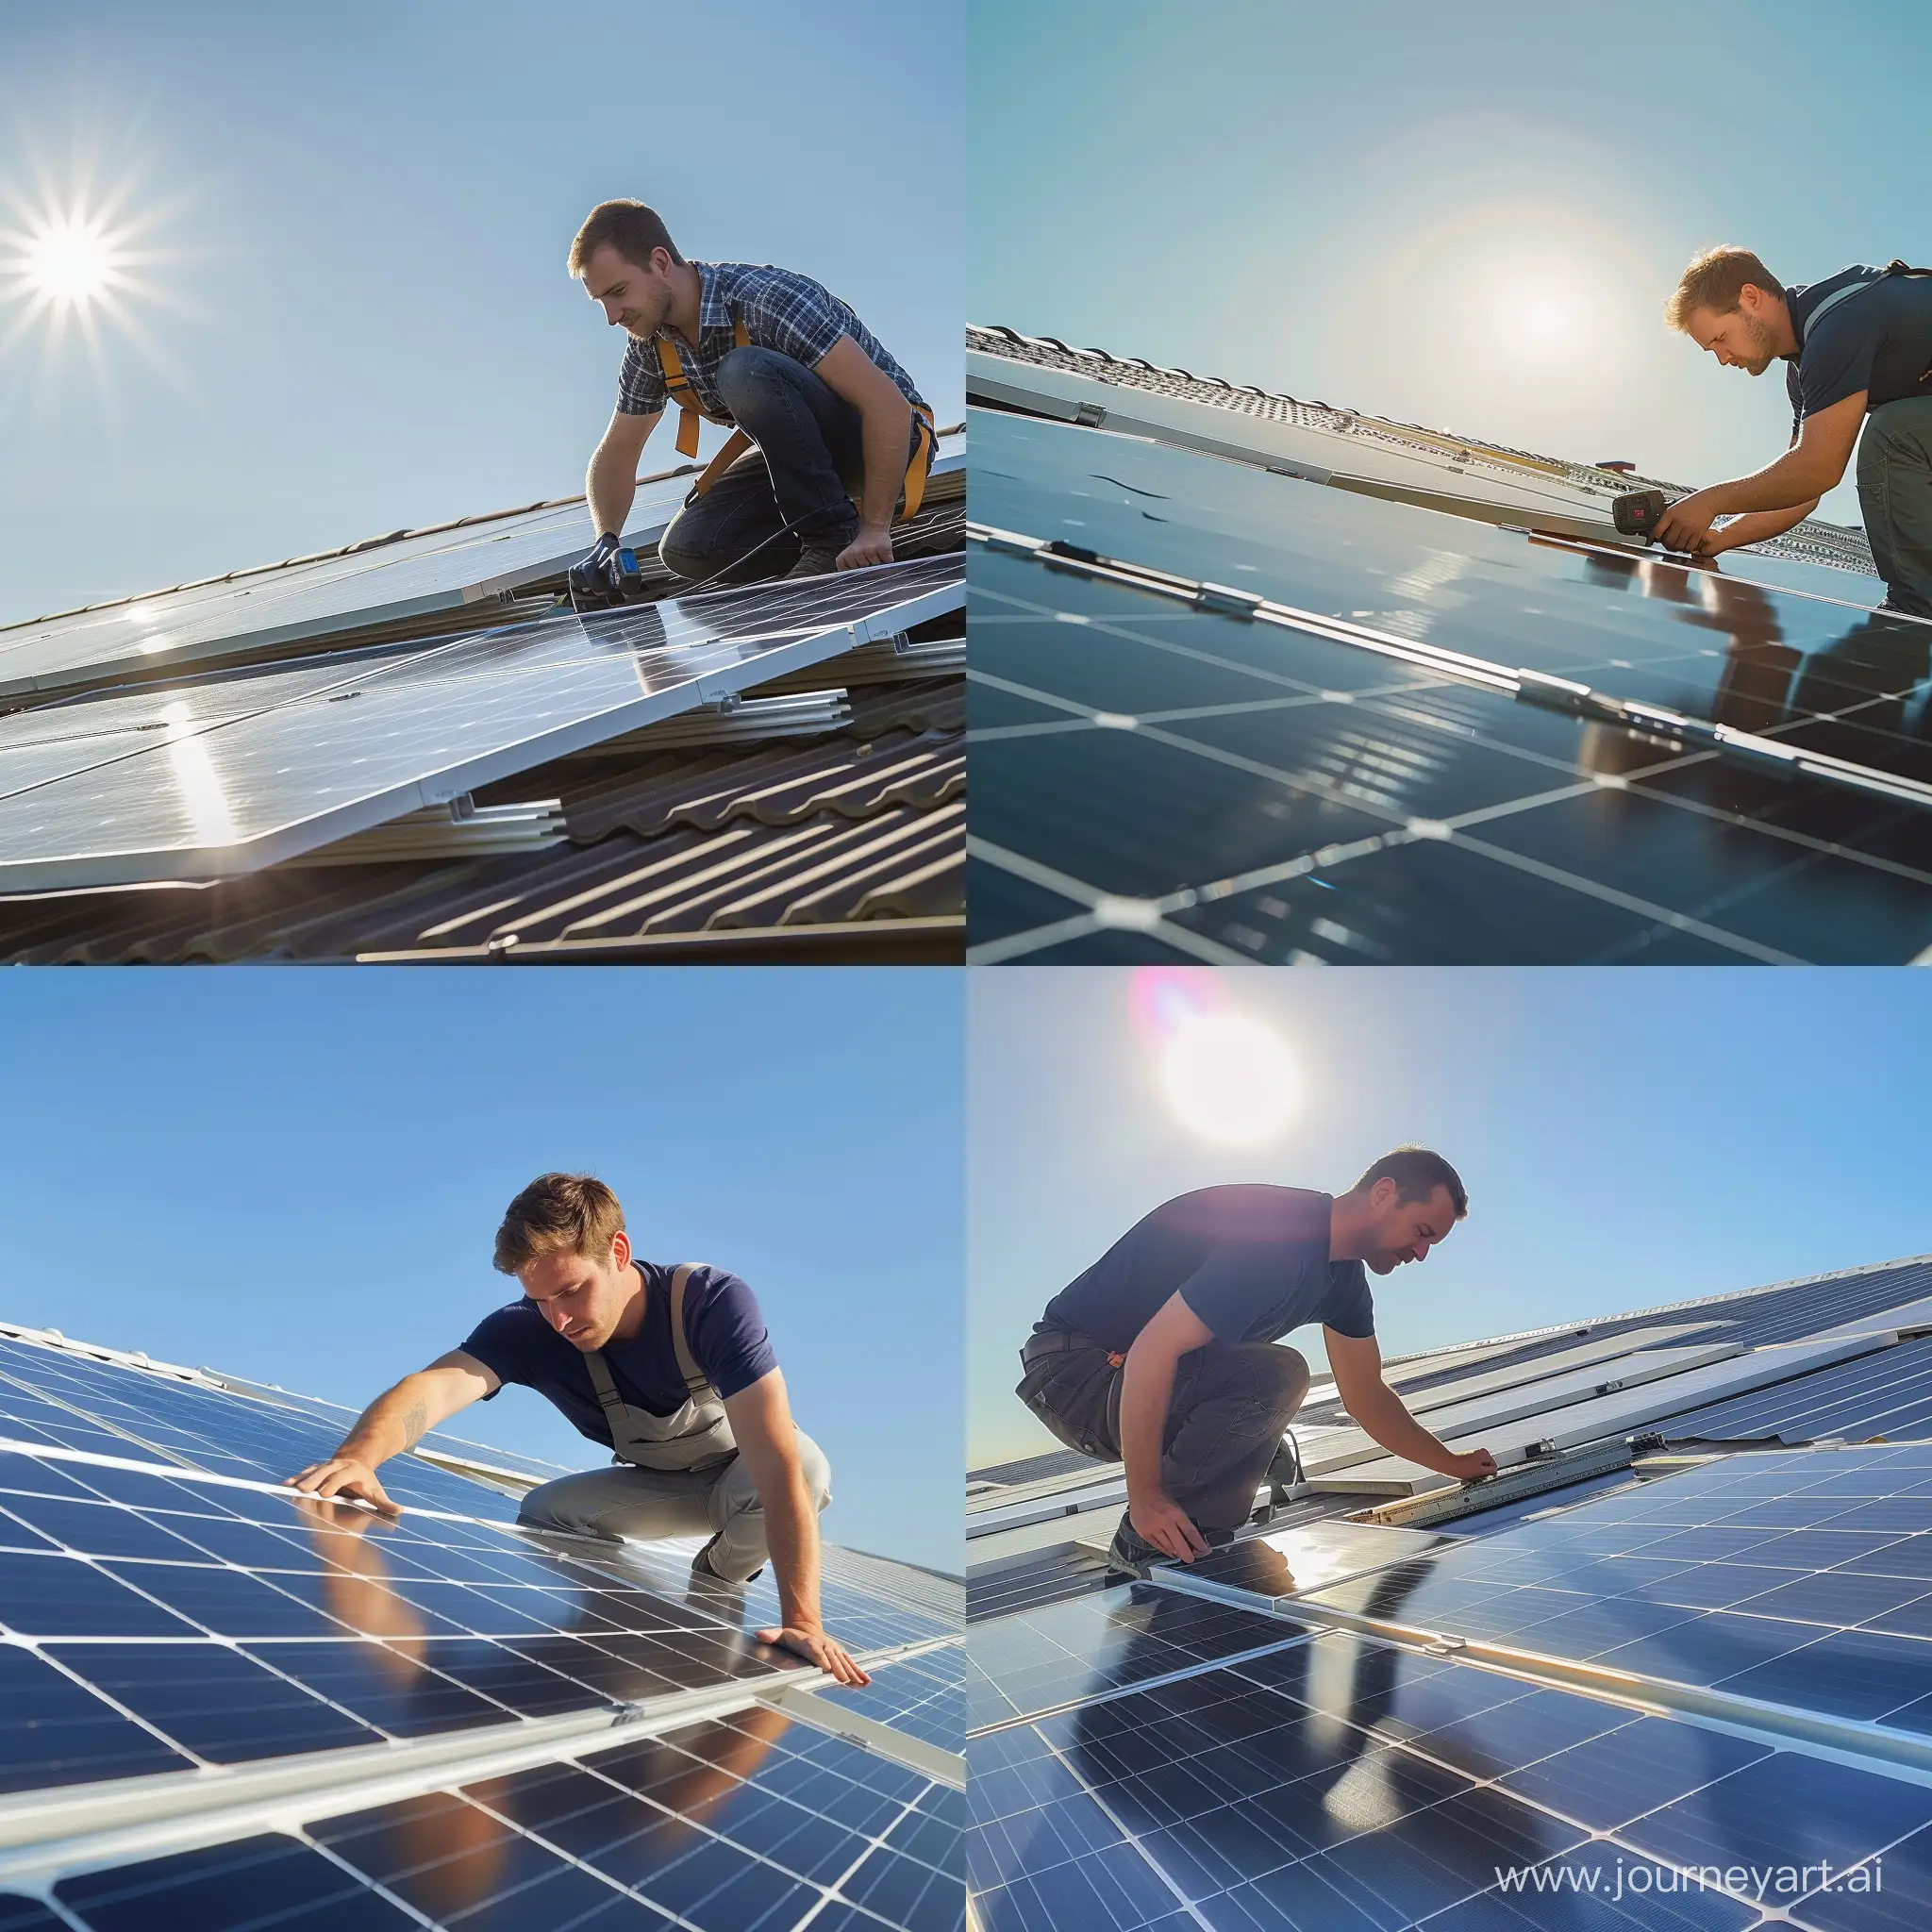 Un uomo caucasico di 40 anni che installa un pannello fotovoltaico sul tetto di una casa. Ambientazione luminosa con il sole che si specchia sui pannelli. Il cielo è di un blu intenso